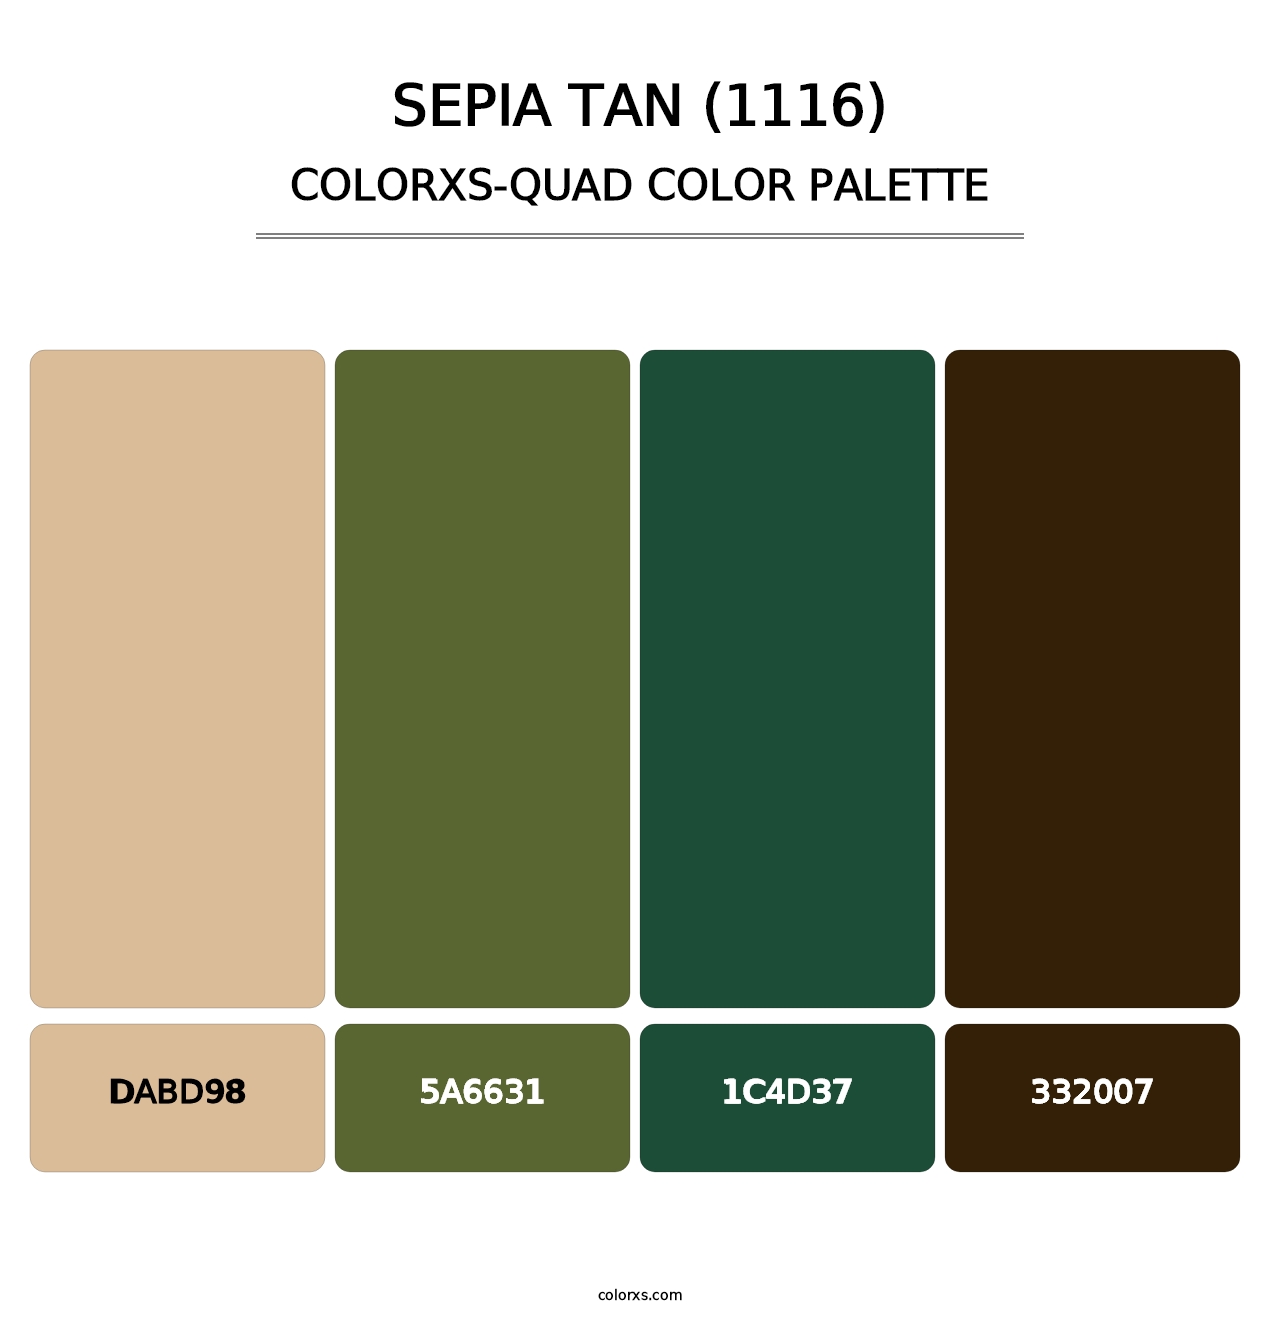 Sepia Tan (1116) - Colorxs Quad Palette